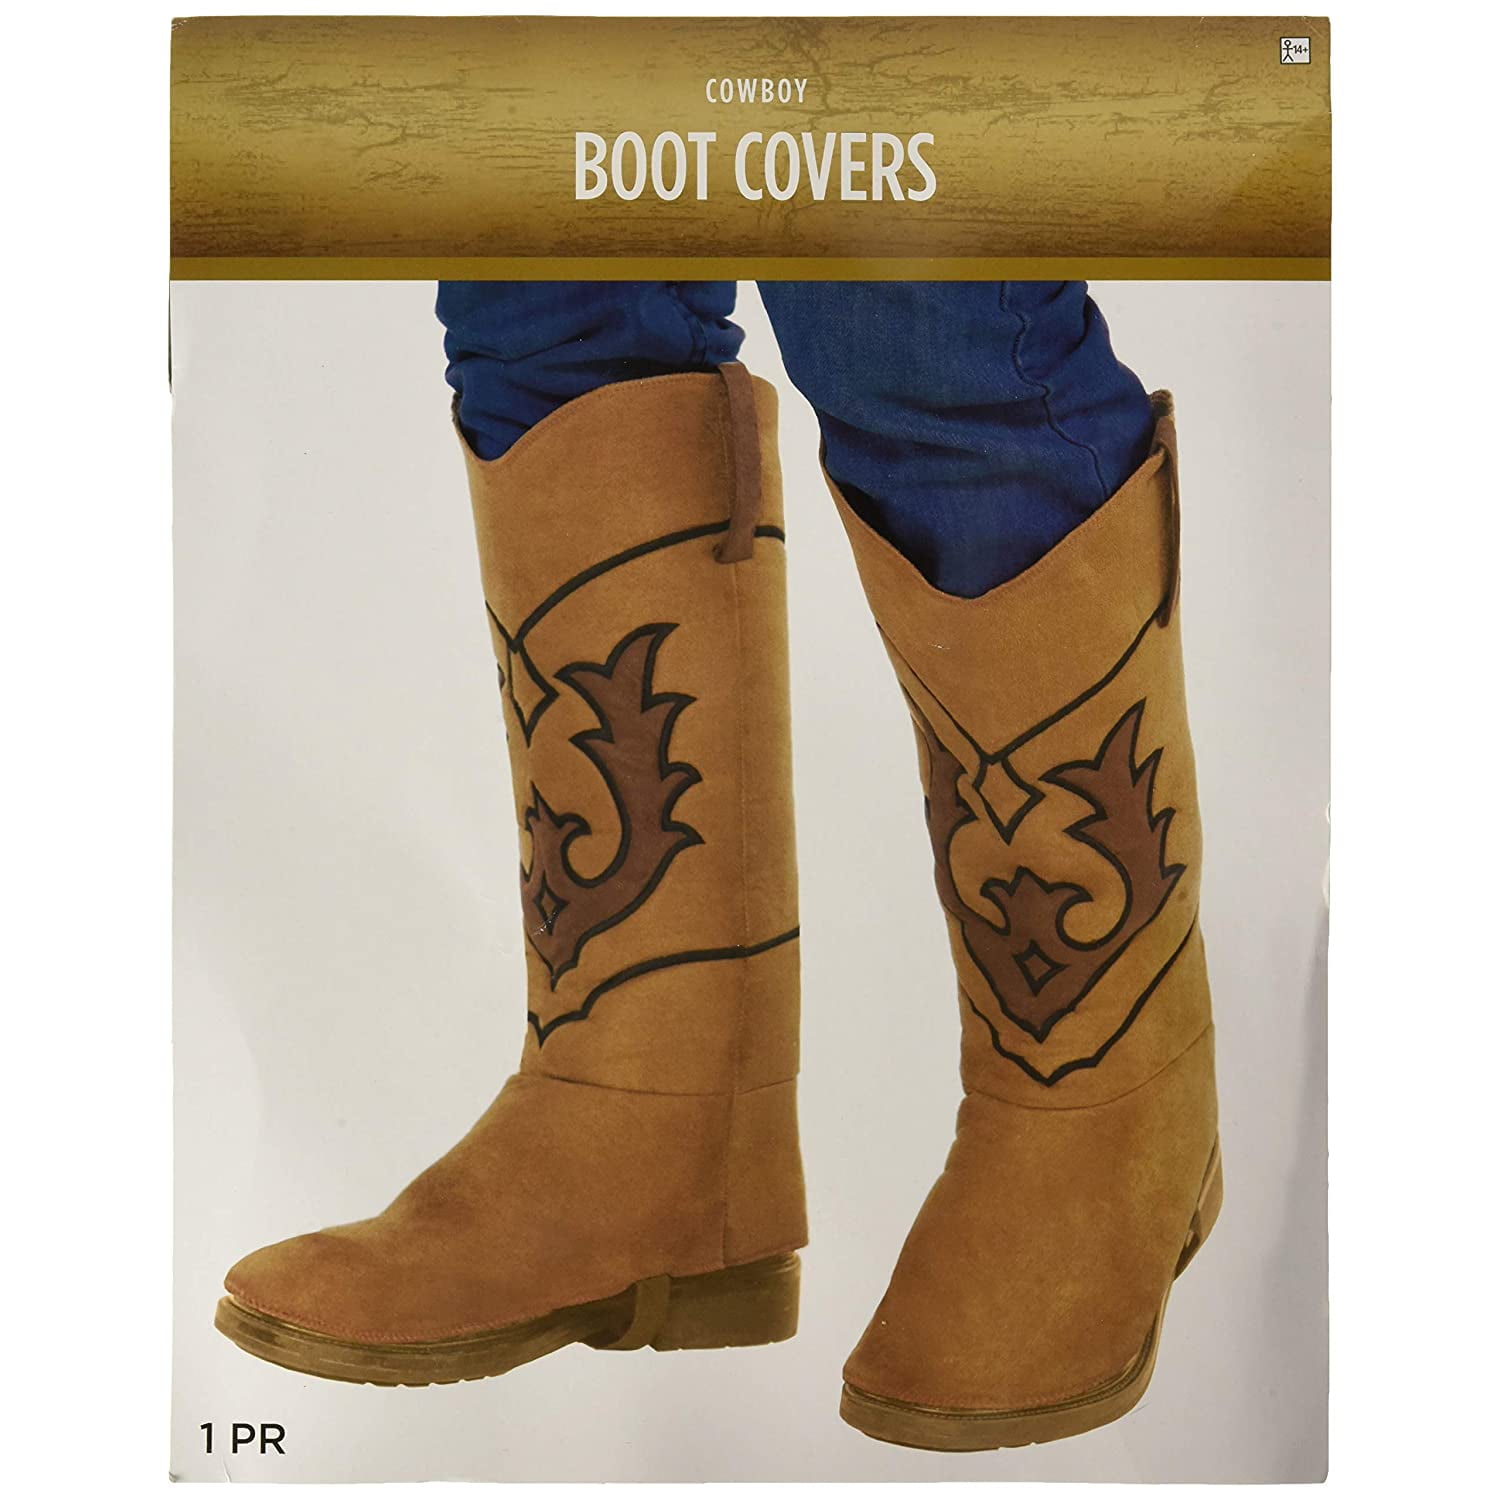 Cowboy Boot Covers - Walmart.com 